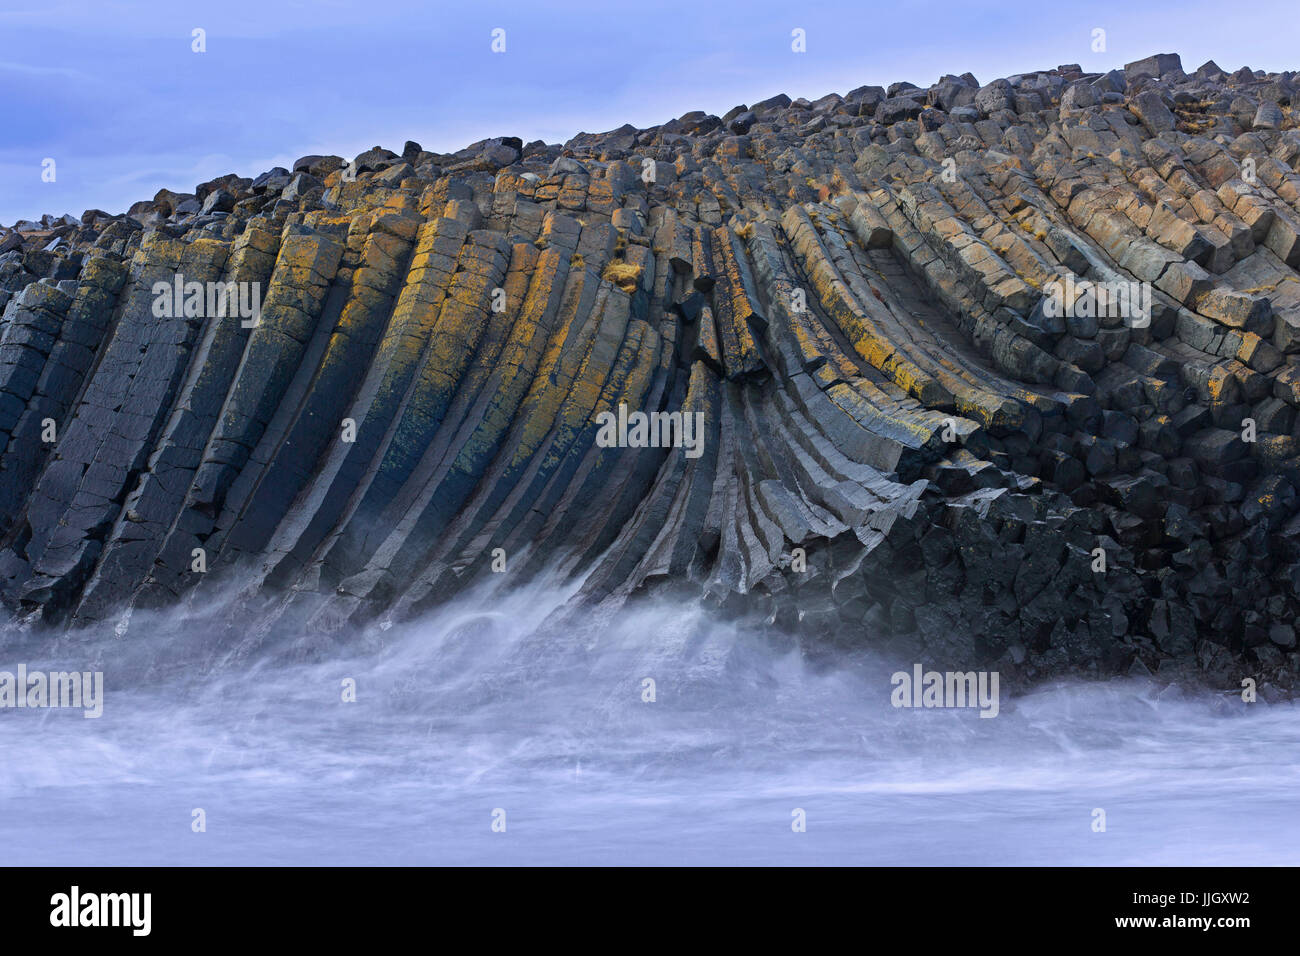 Onde che si infrangono sulle colonne di basalto vulcanico, formazioni di lava in scogliera sul mare vicino Kalfshamarsvik cove, Kalfshamar Penisola, Skagi, Islanda Foto Stock